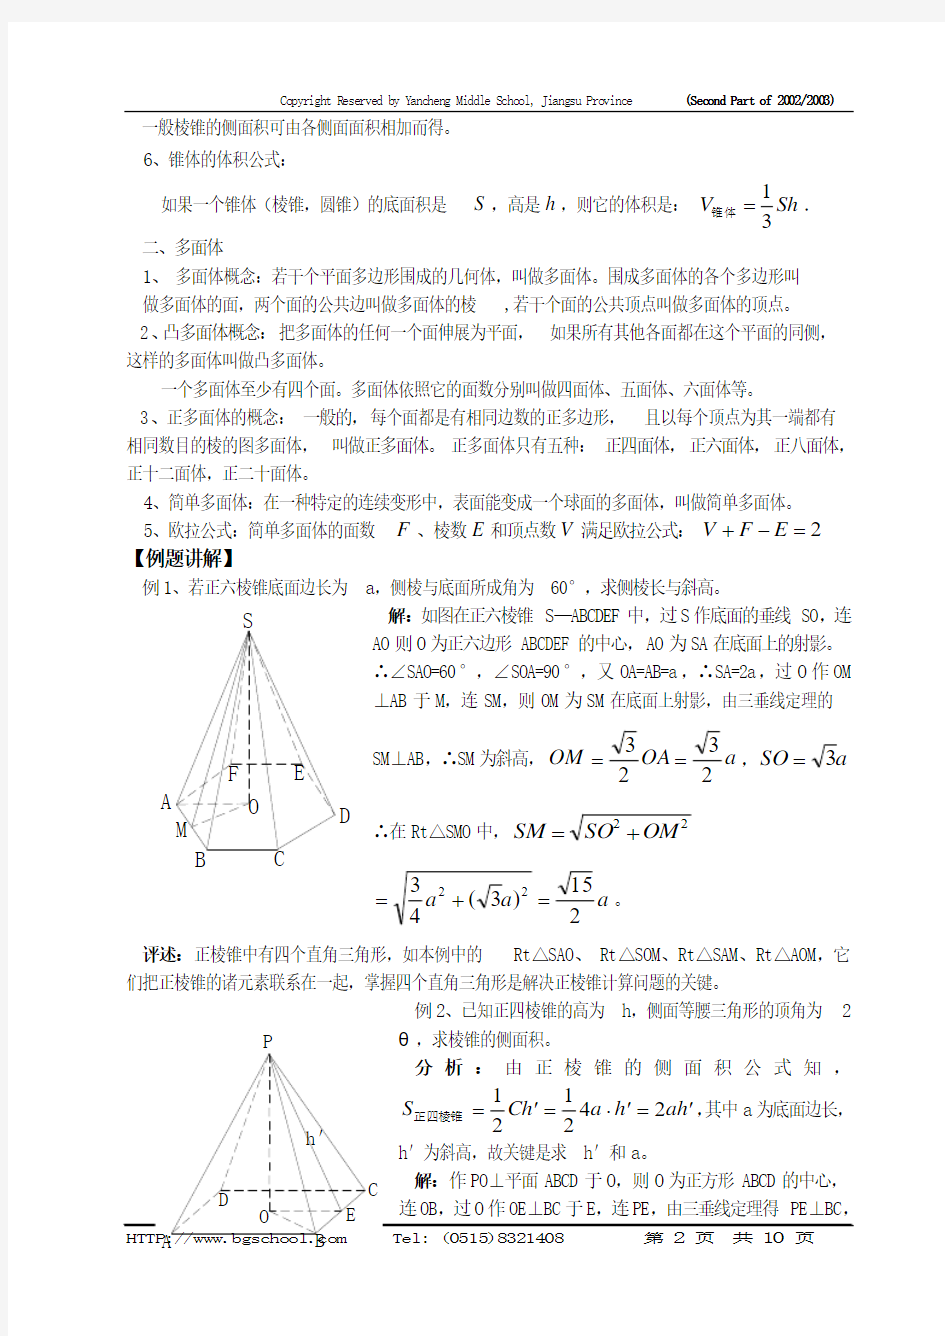 棱锥、多面体及其欧拉公式